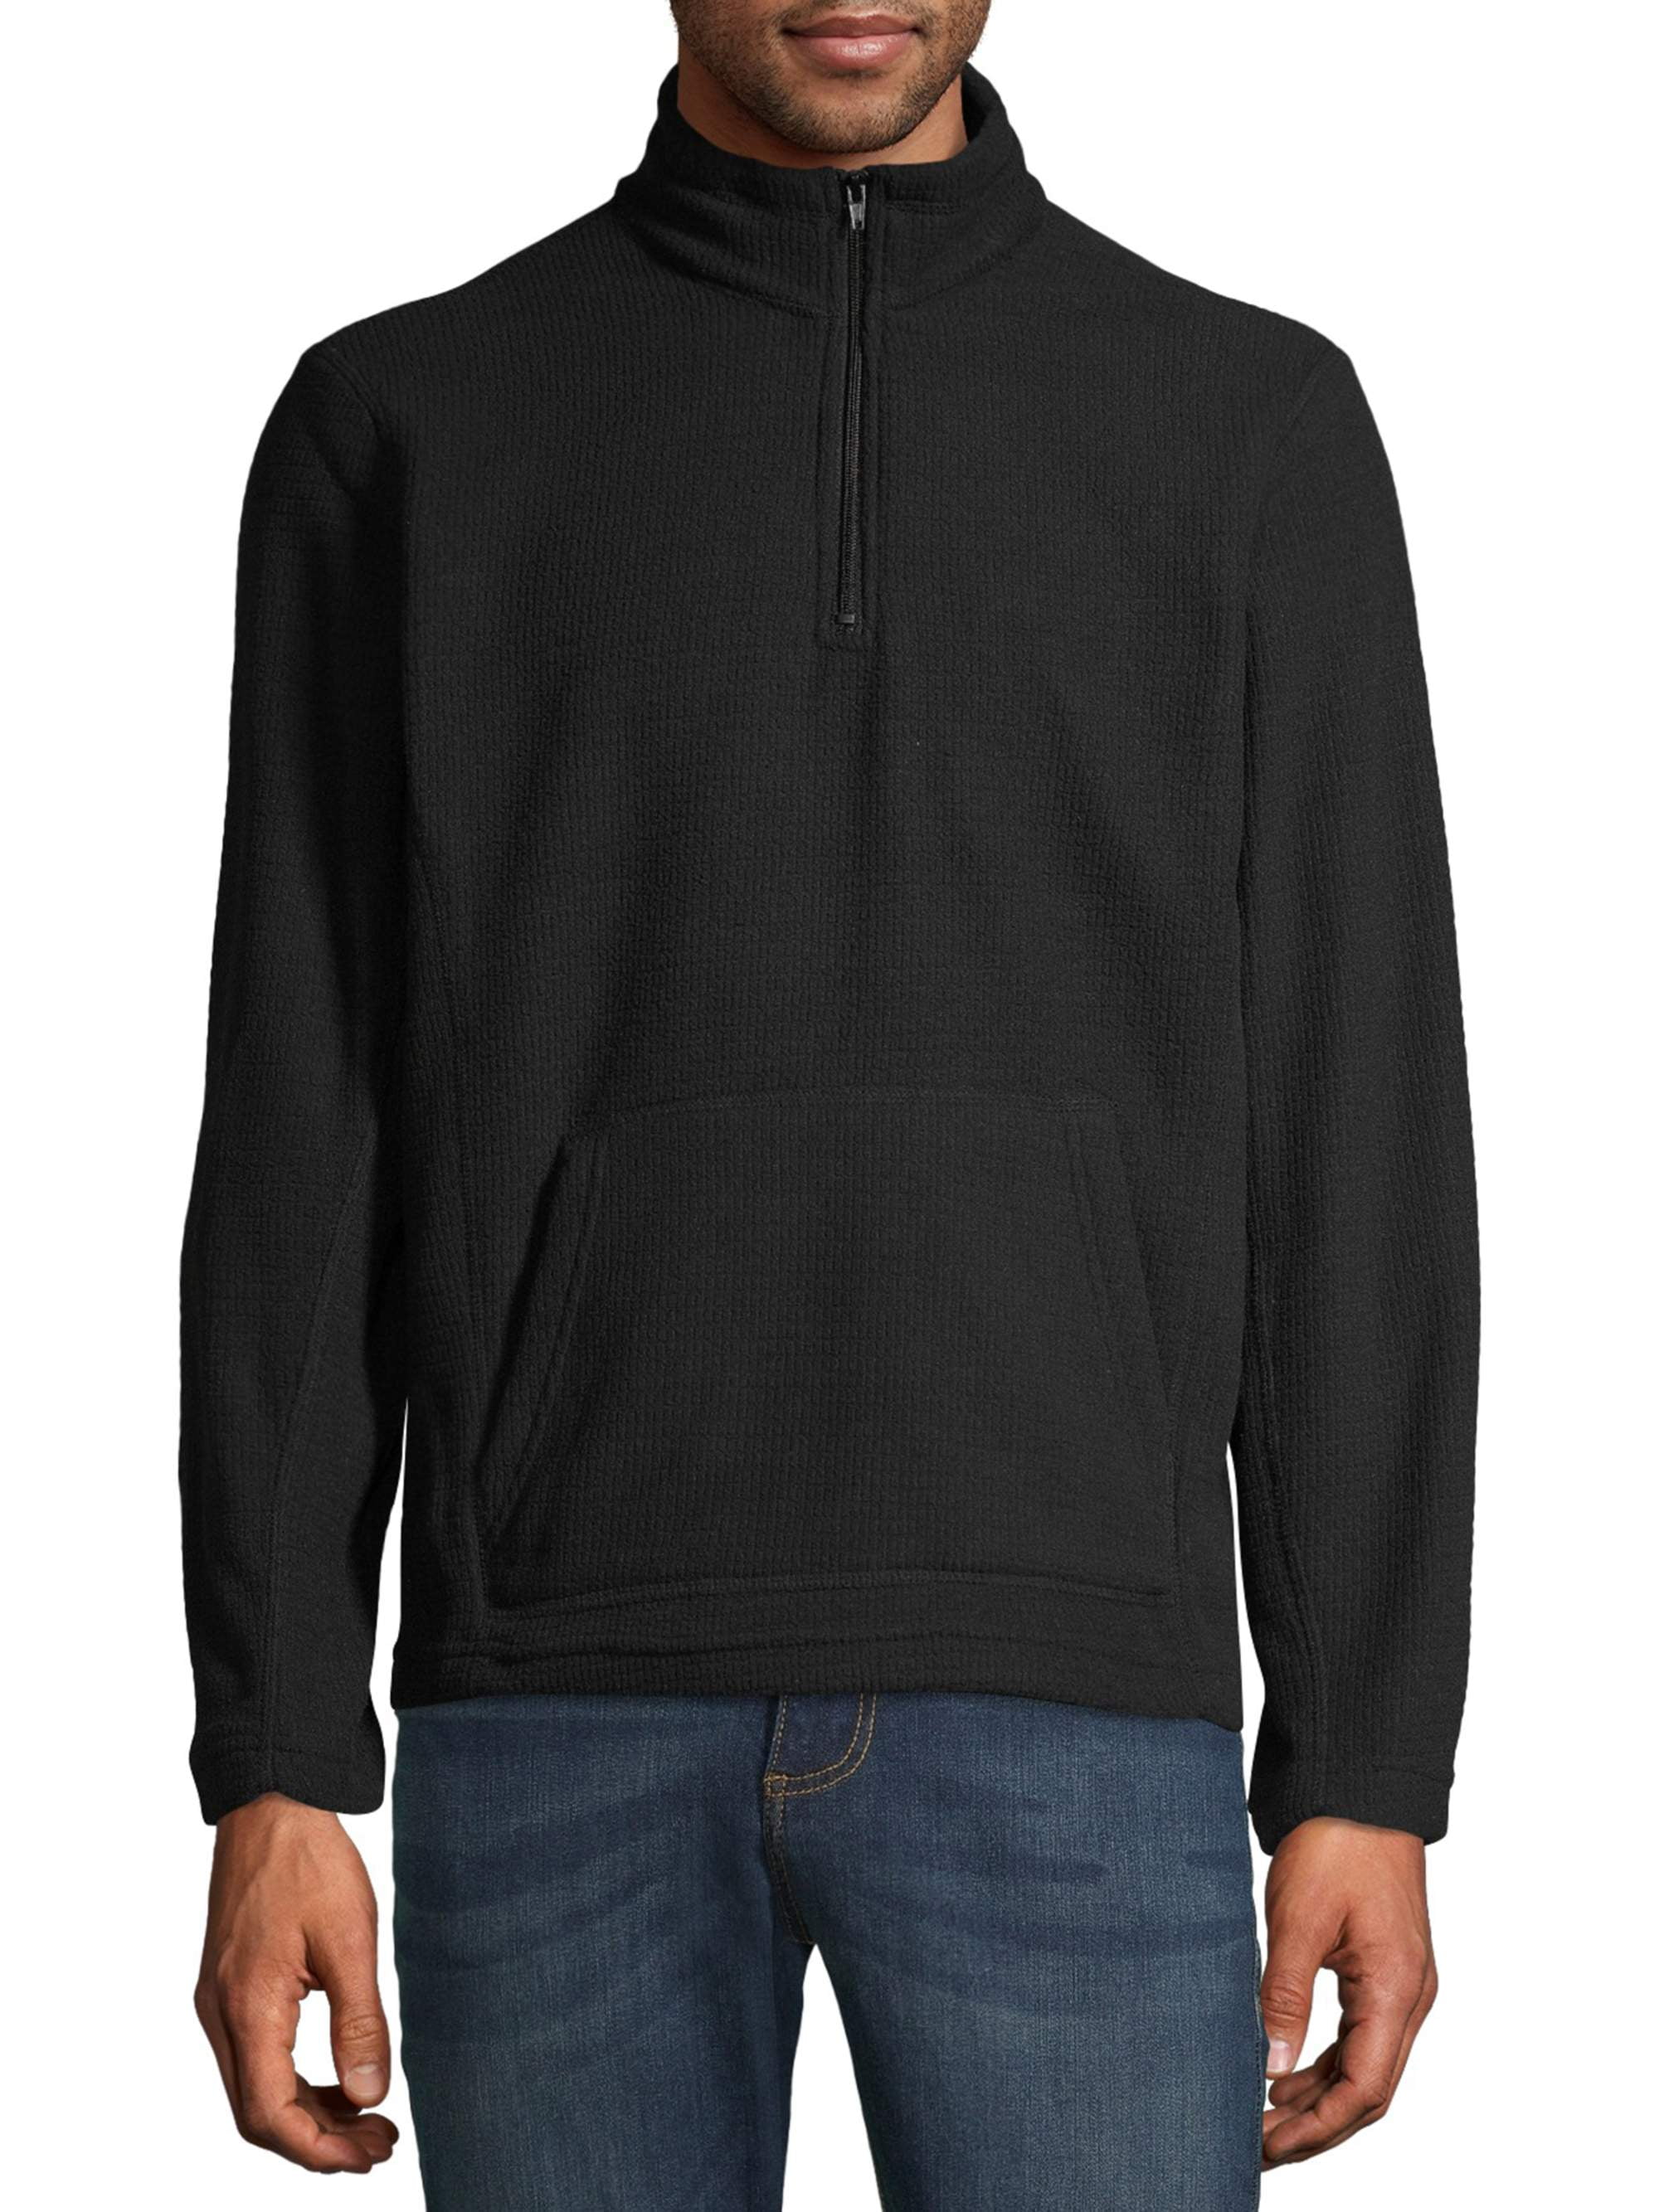 i5 Apparel Men's Active Polar Fleece Quarter Zip Sweatshirt, up to Size ...